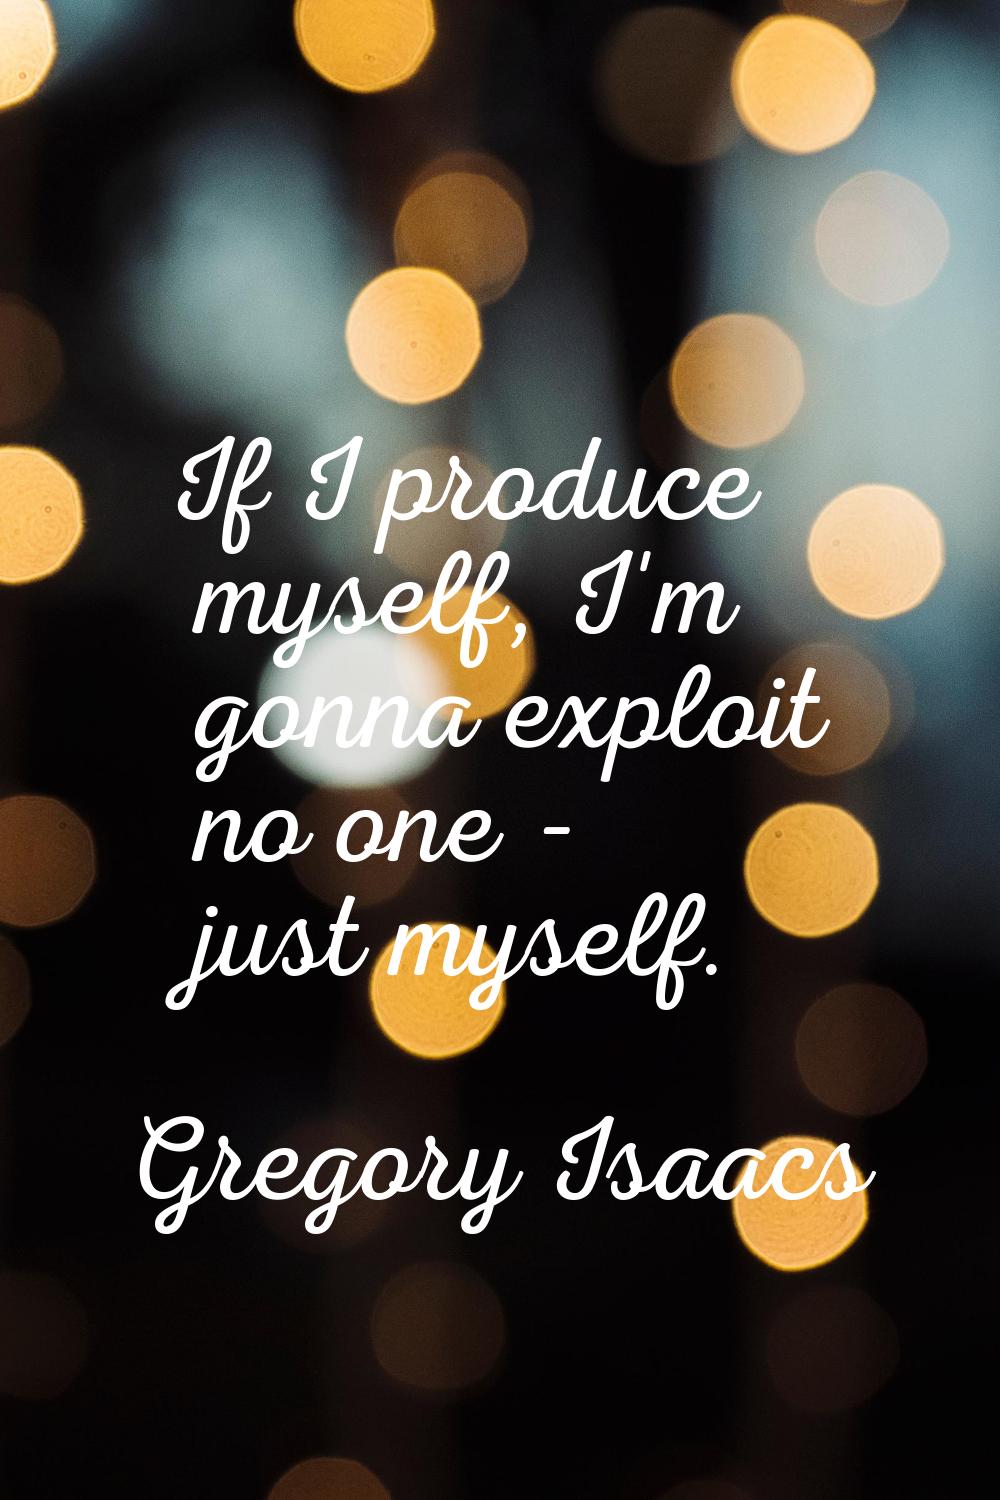 If I produce myself, I'm gonna exploit no one - just myself.